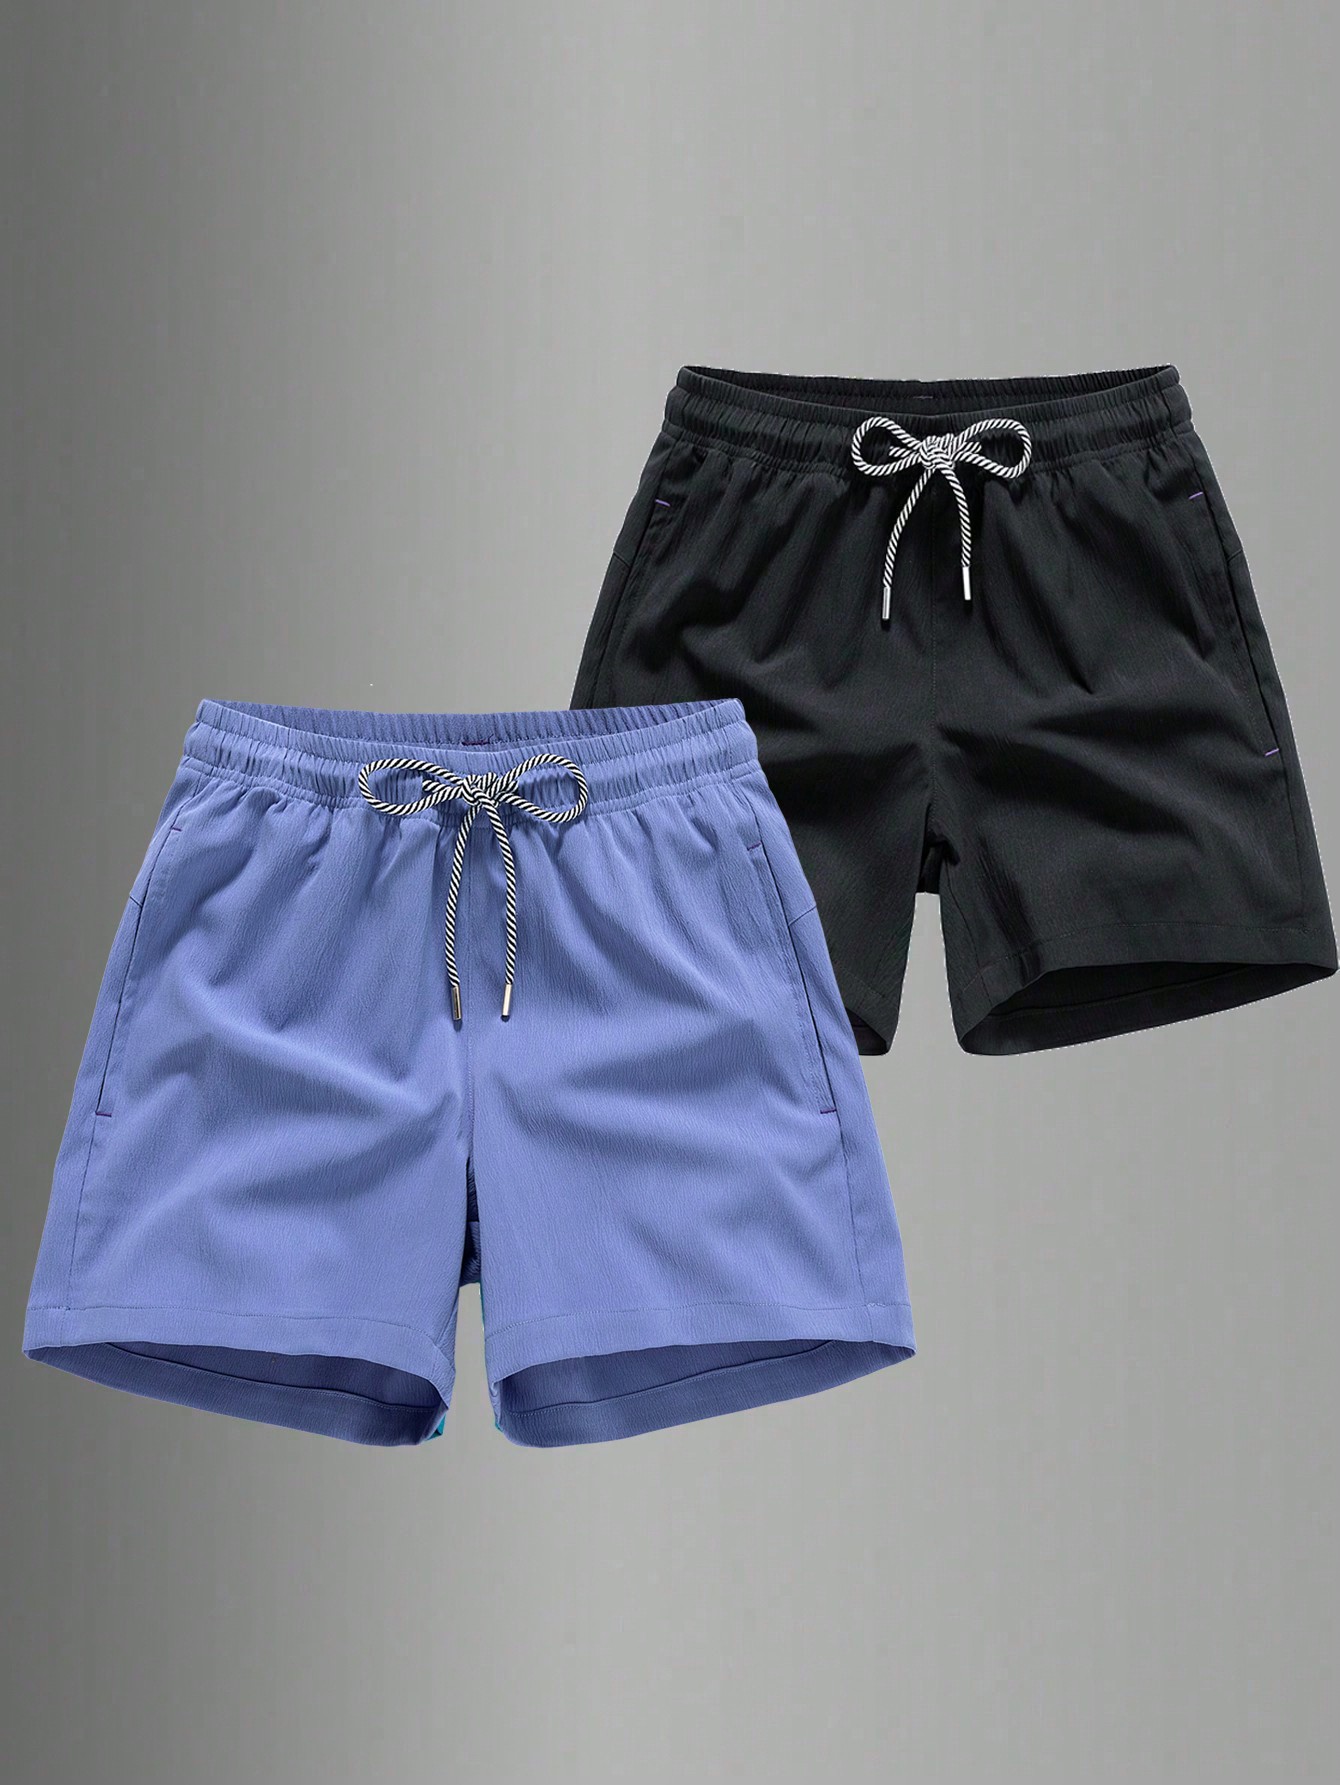 Мужские быстросохнущие спортивные шорты с завязками на талии для пляжного отдыха или тренировок, фиолетовый